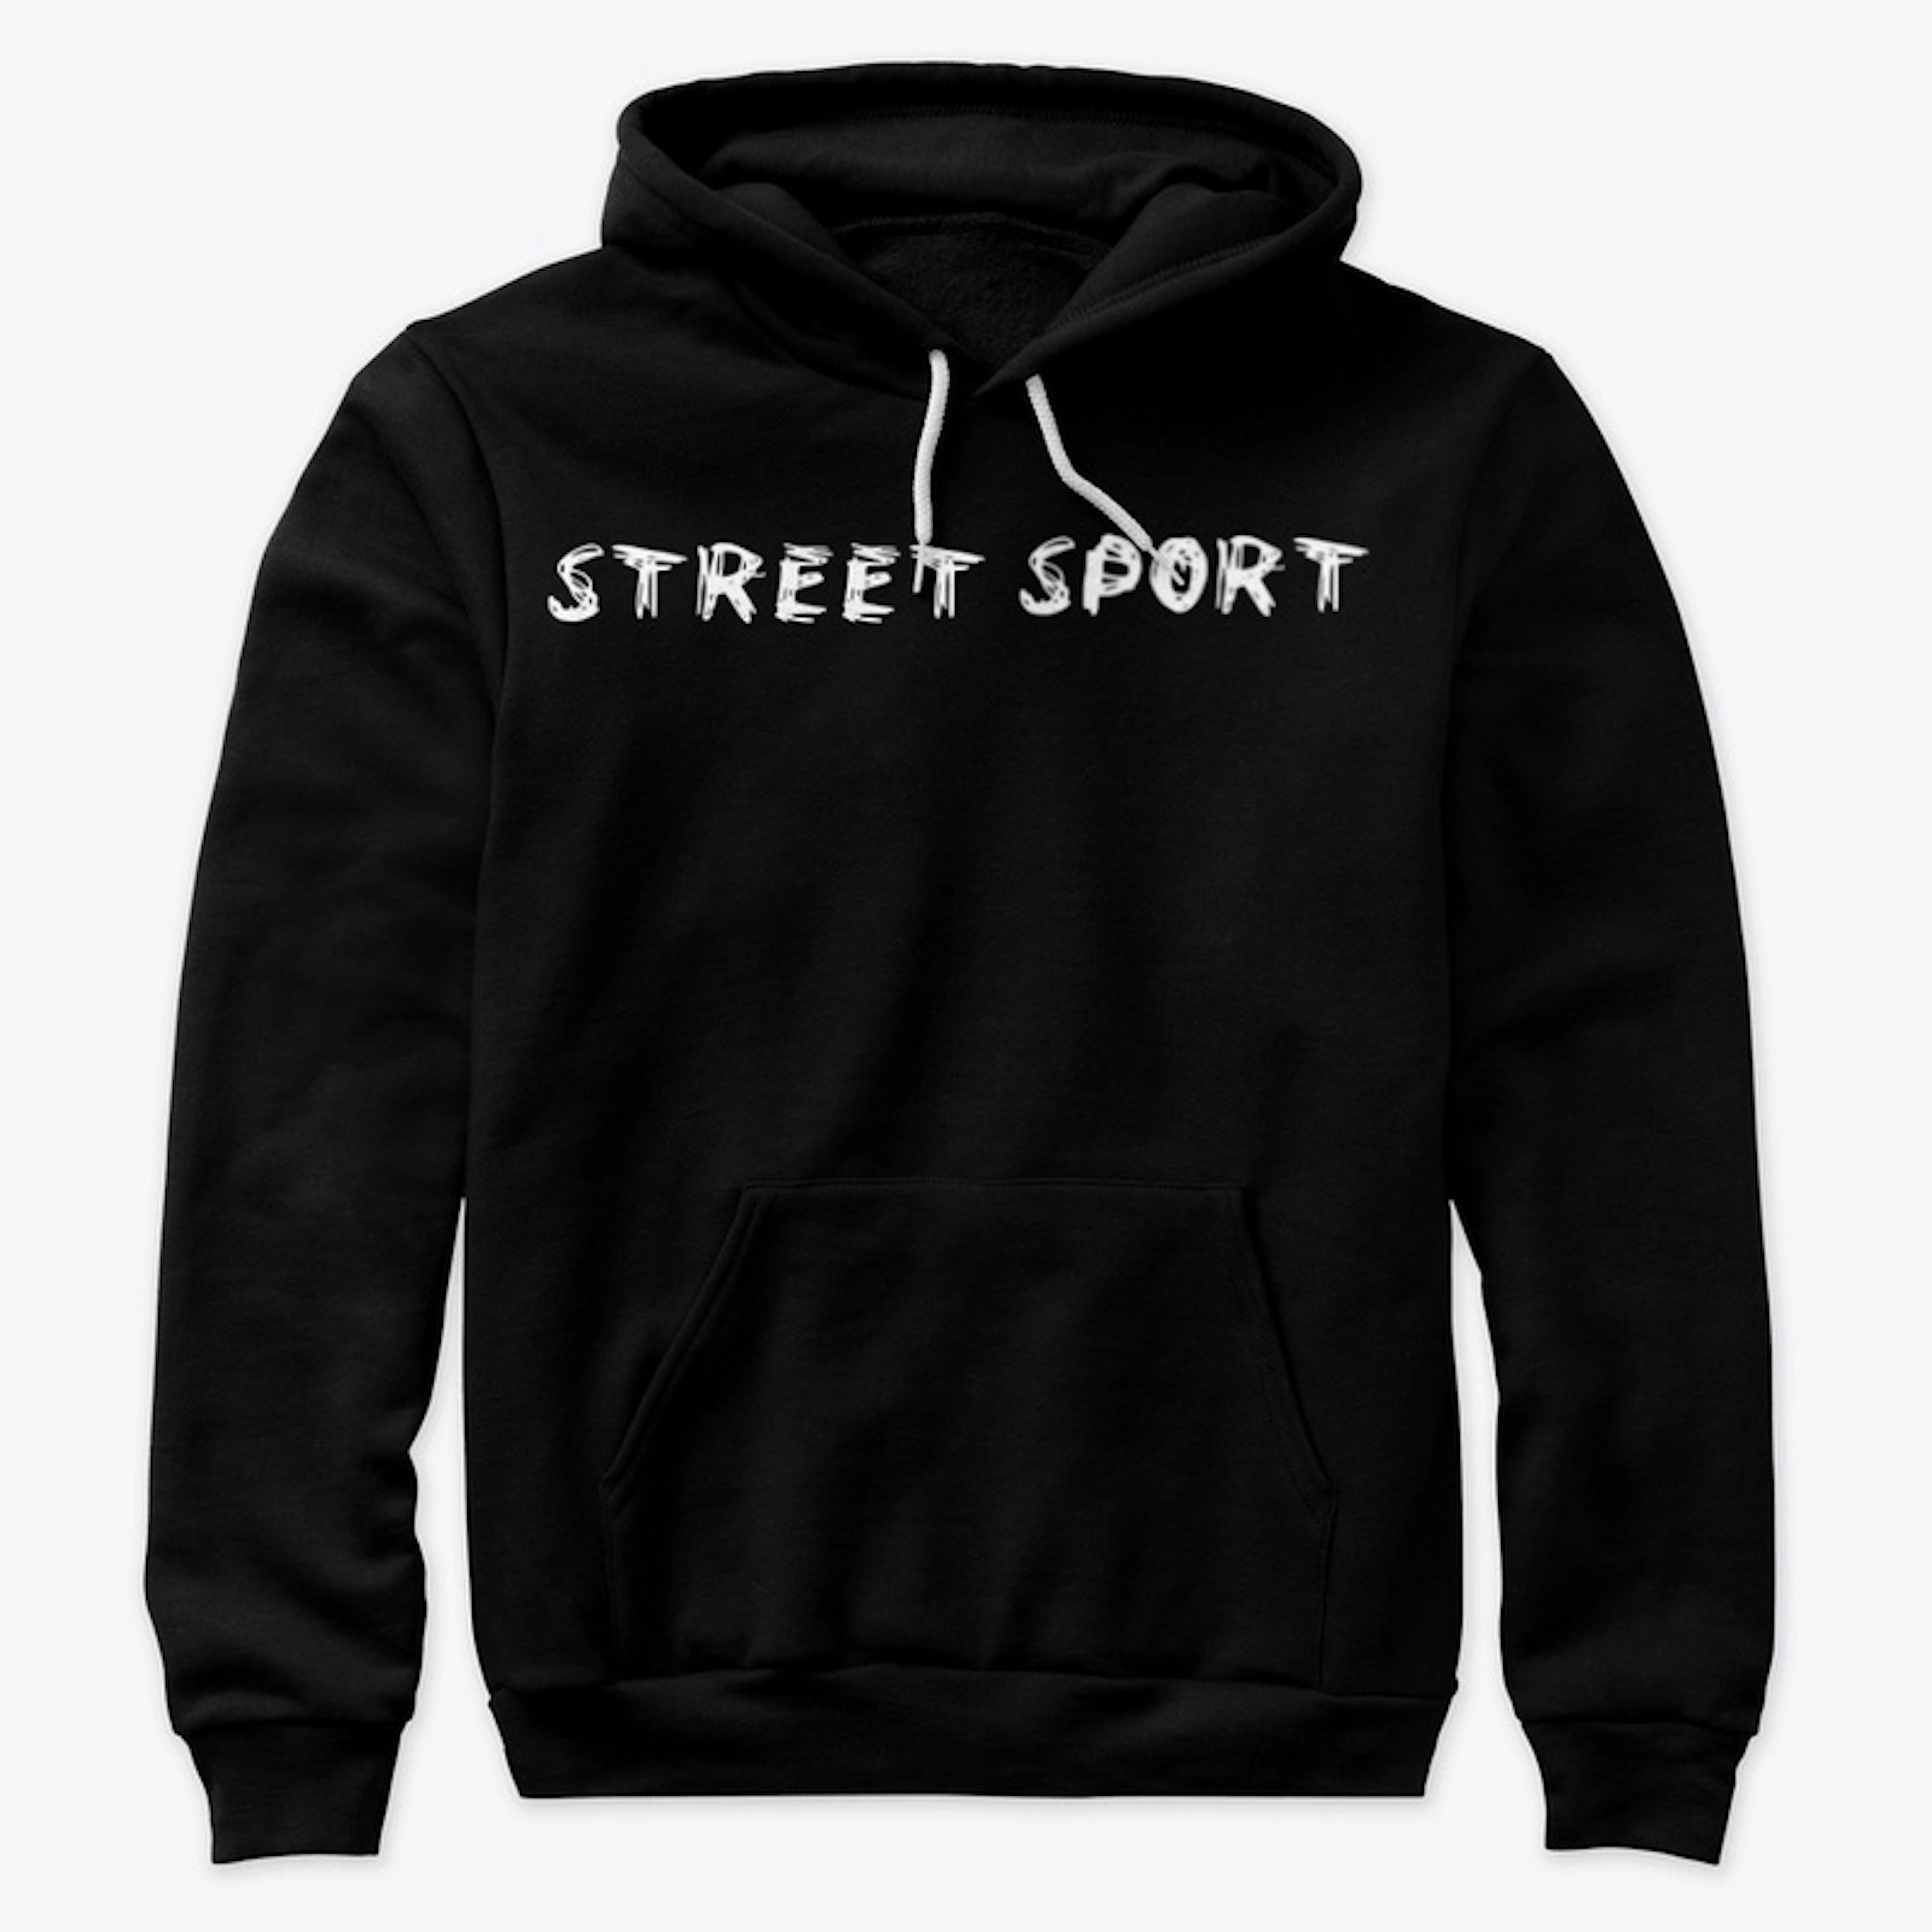 Street Sport Premium Pullover Hoodie